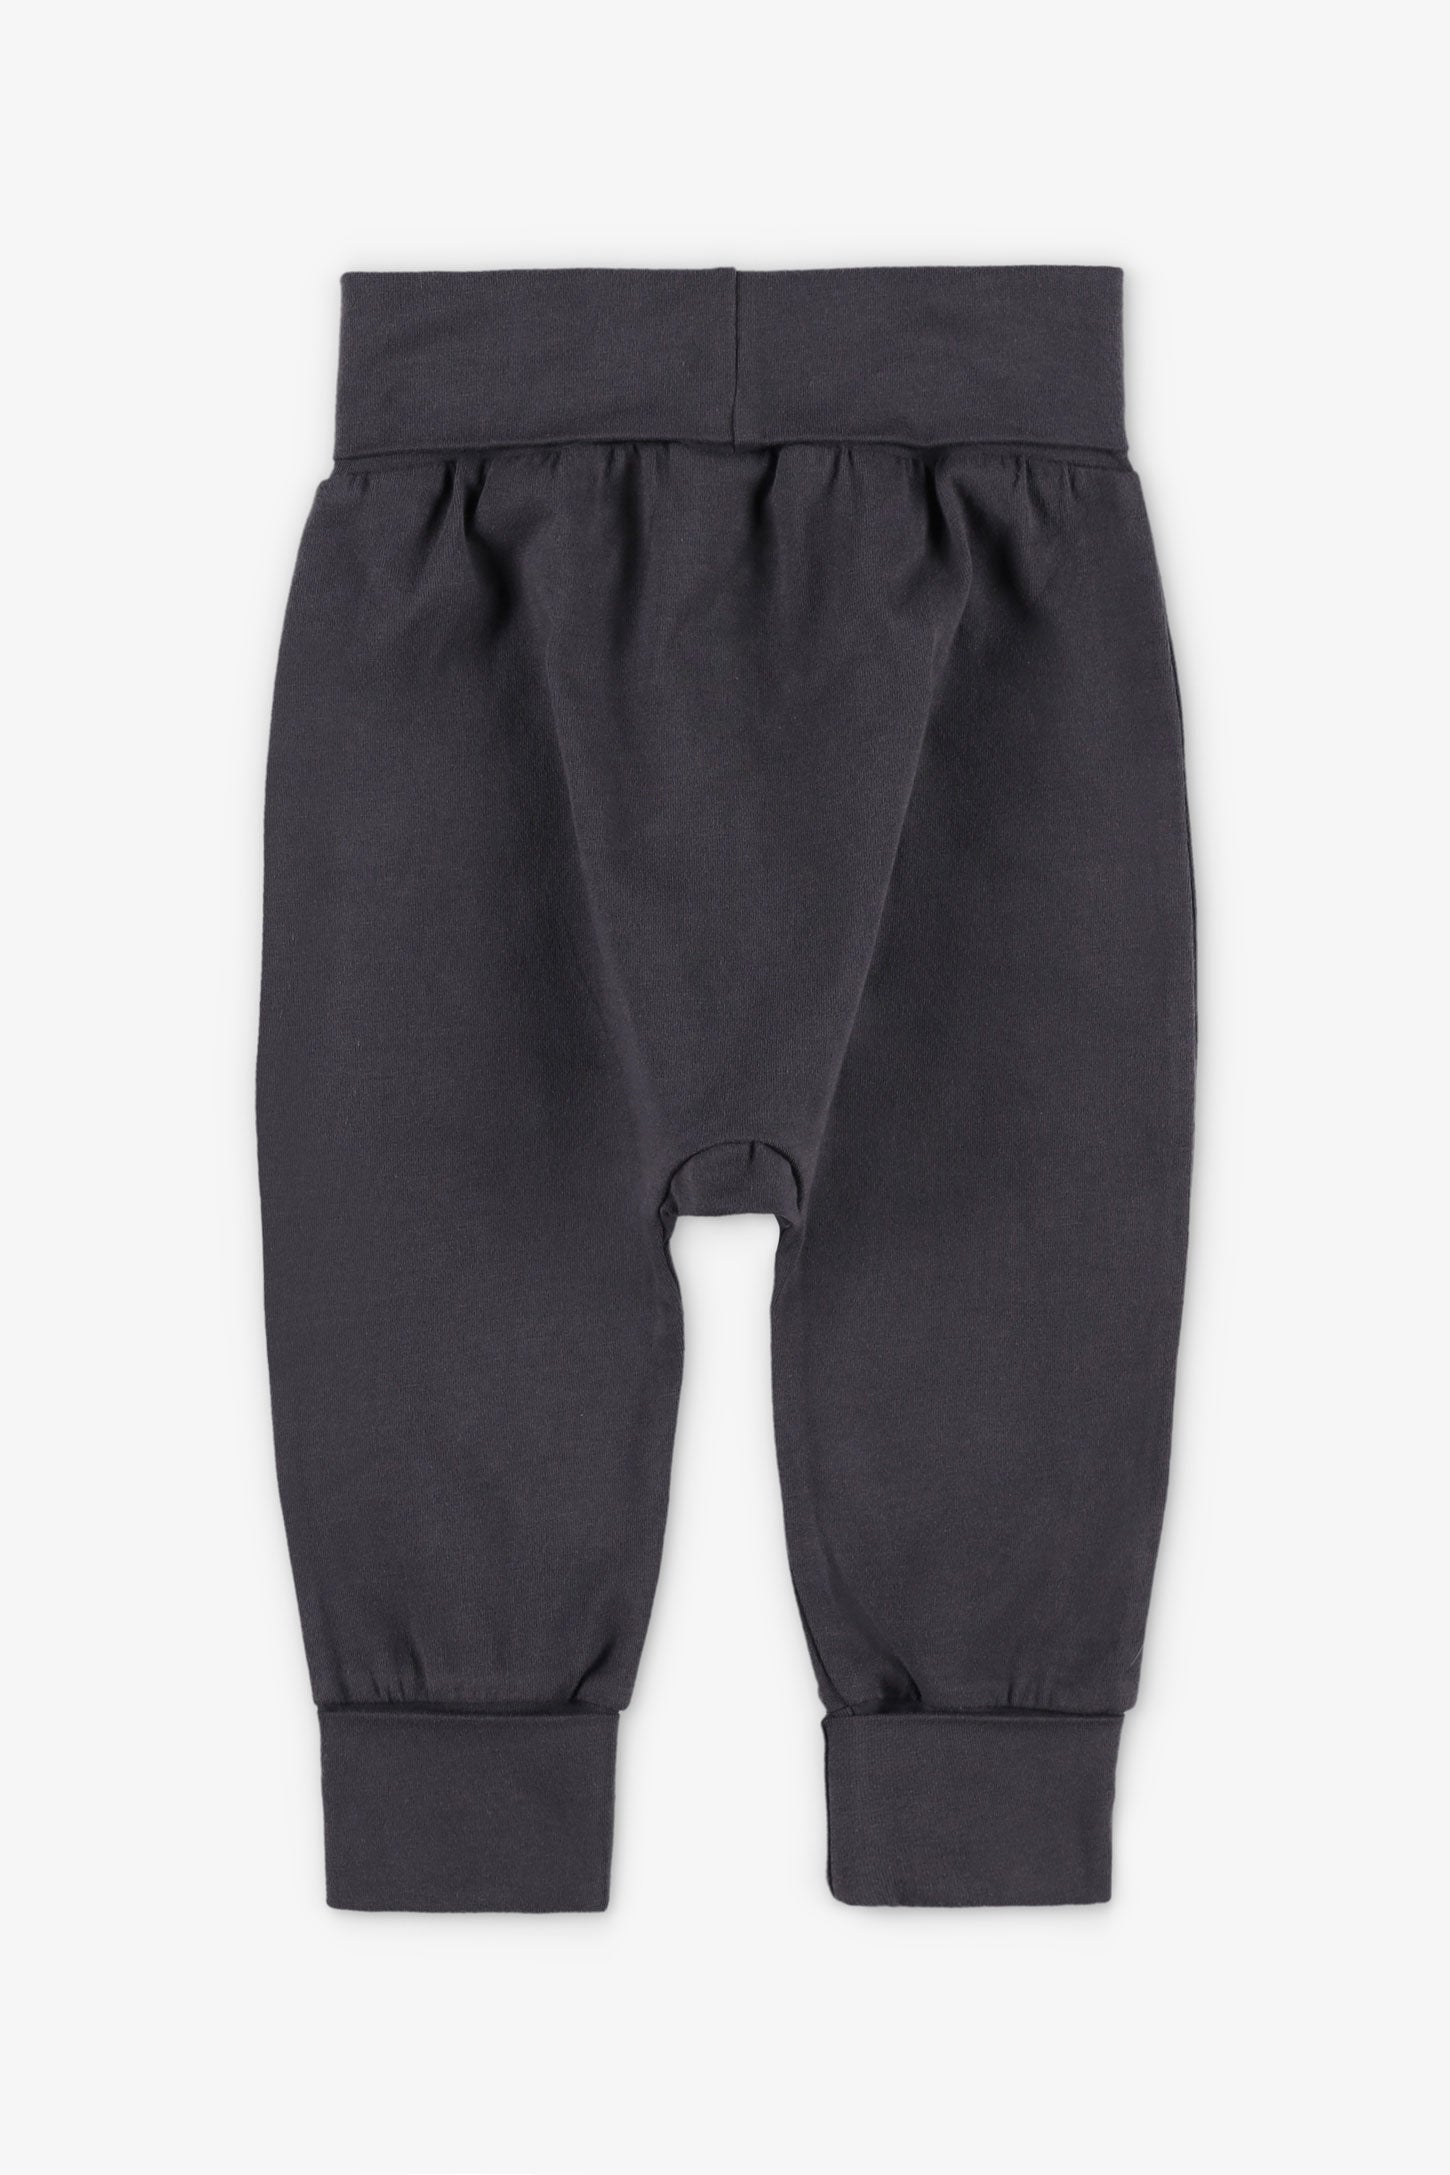 Pantalon évolutif en coton, 2T-3T - Bébé garçon && GRIS